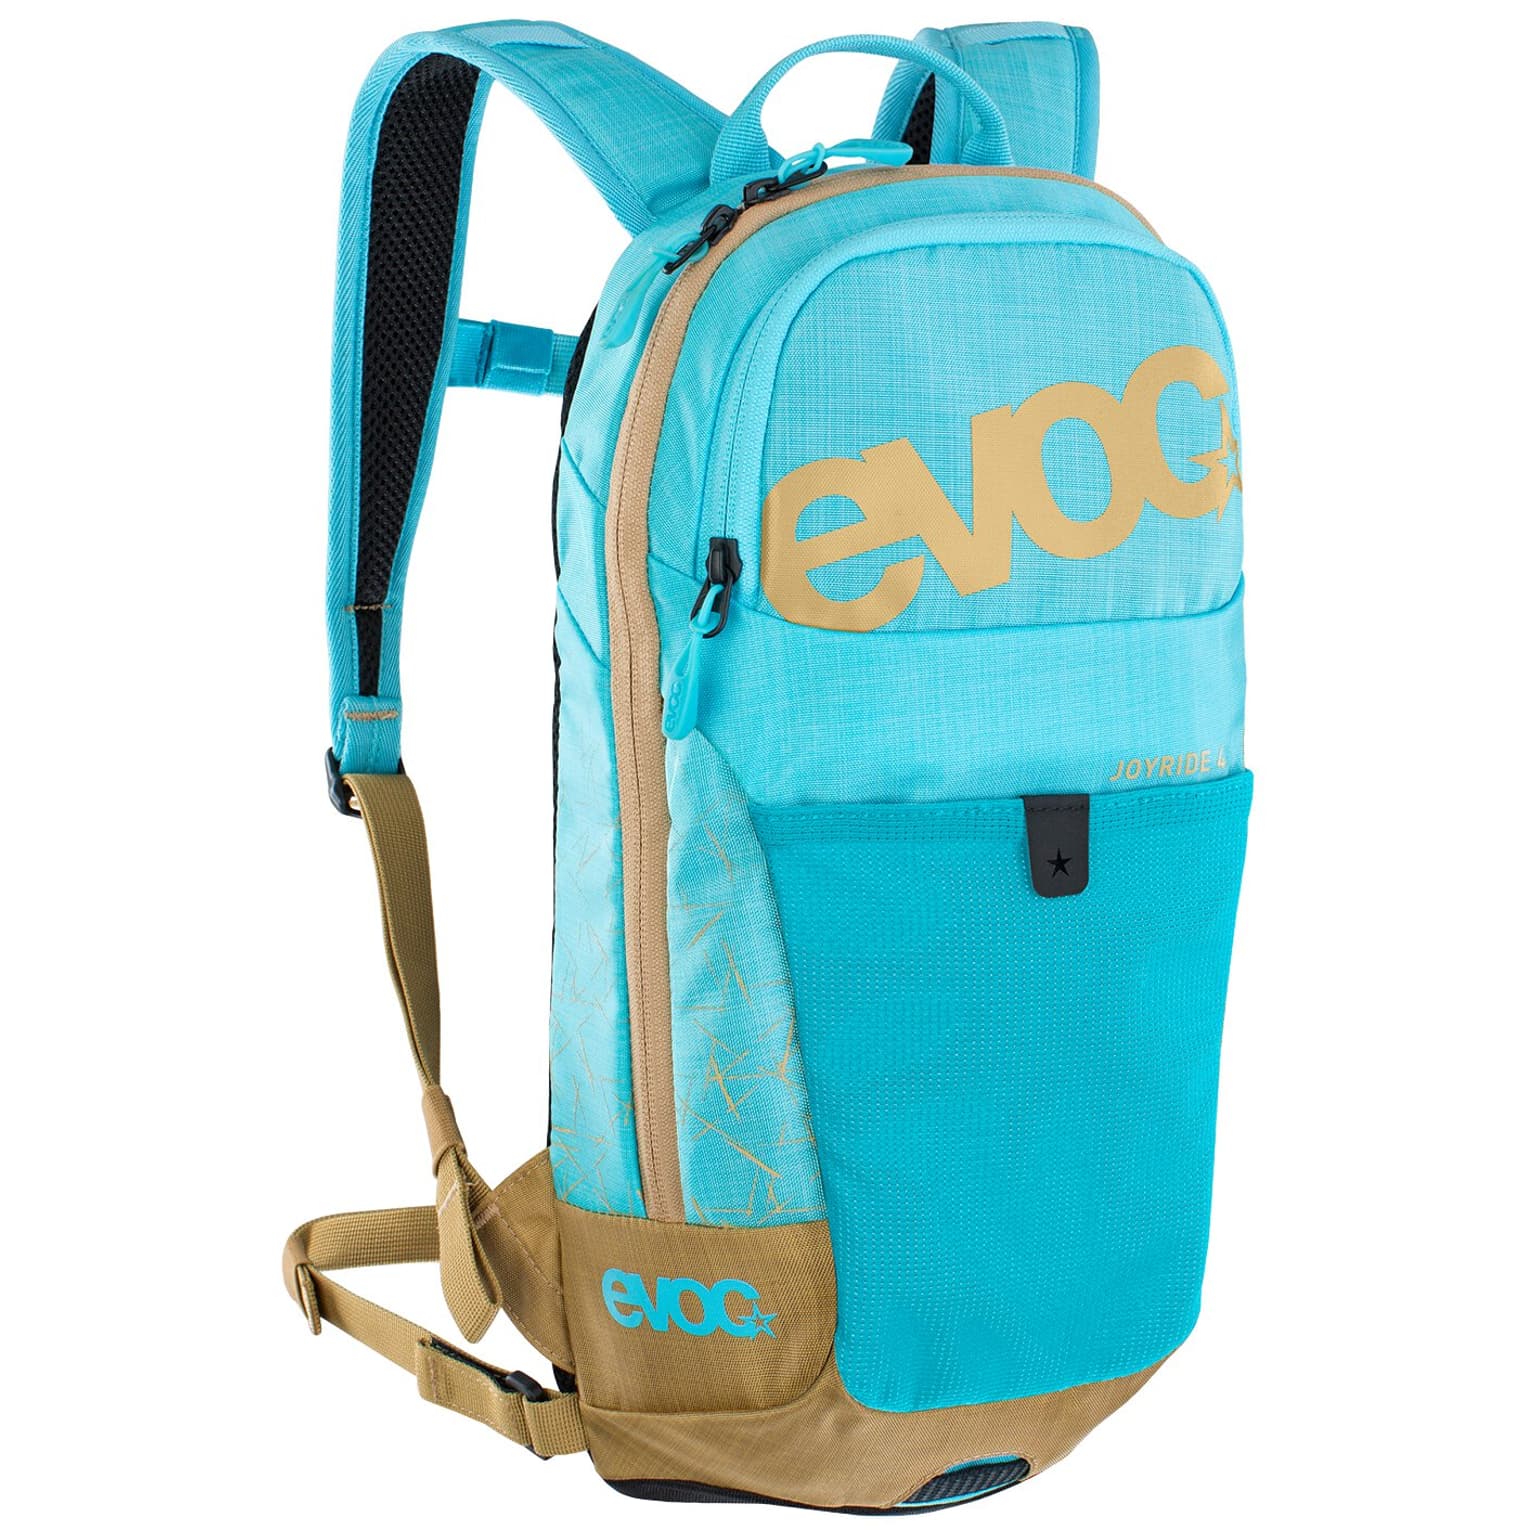 Evoc Evoc Joyride 4L Junior Backpack Bikerucksack blu-chiaro 1